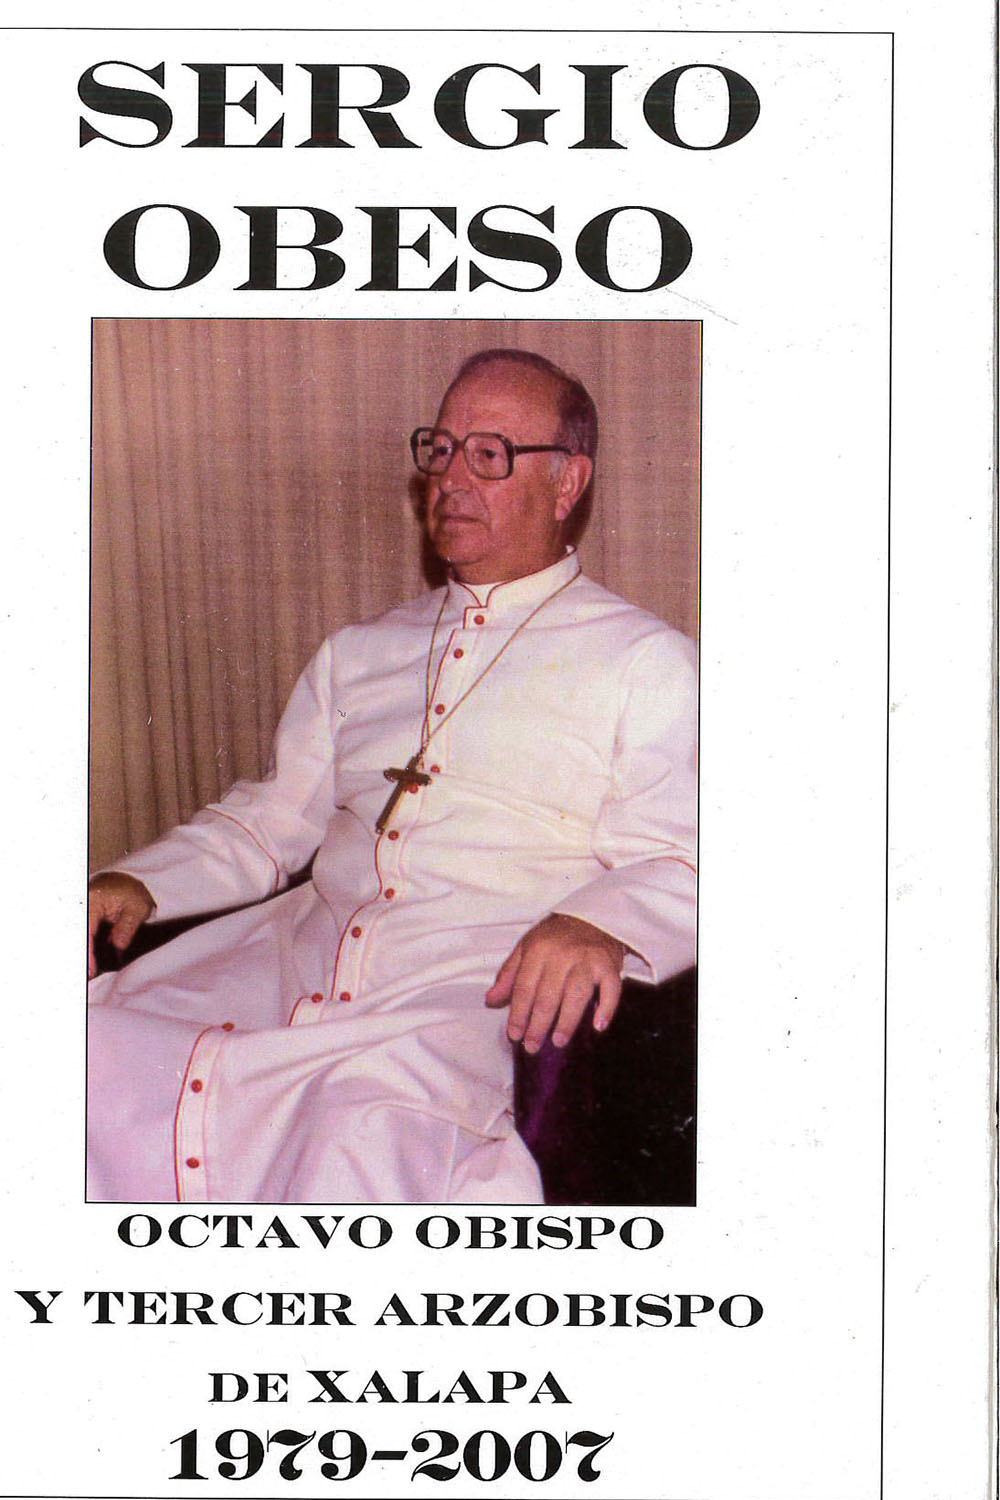 12 / 16 - BR1720,S5 B37 Sergio Obeso
Celestino Barradas - Ediciones San José, México 2012